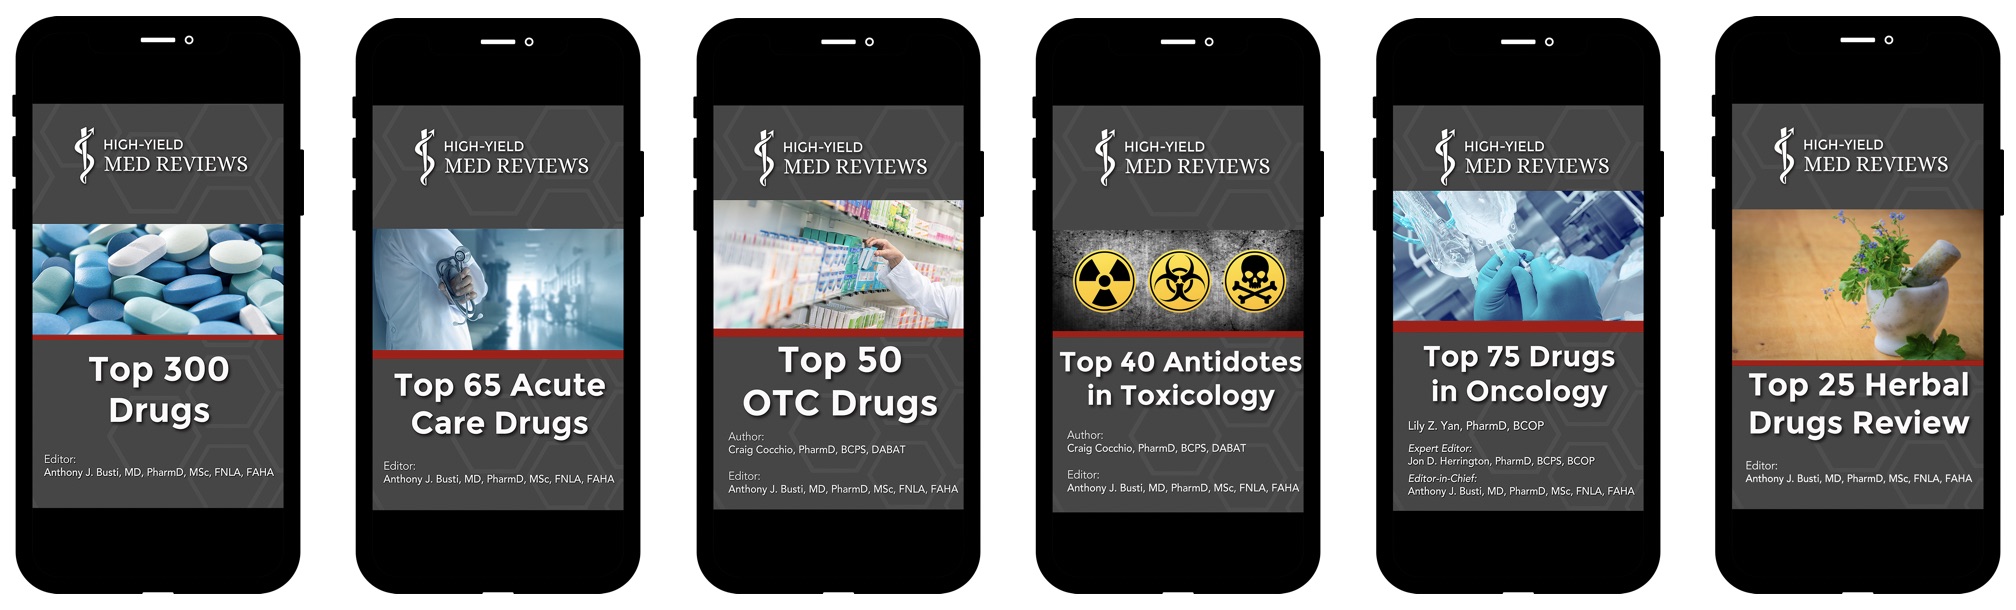 TOP-DRUGS-eBook-Collage-Covers-iPhones.jpg